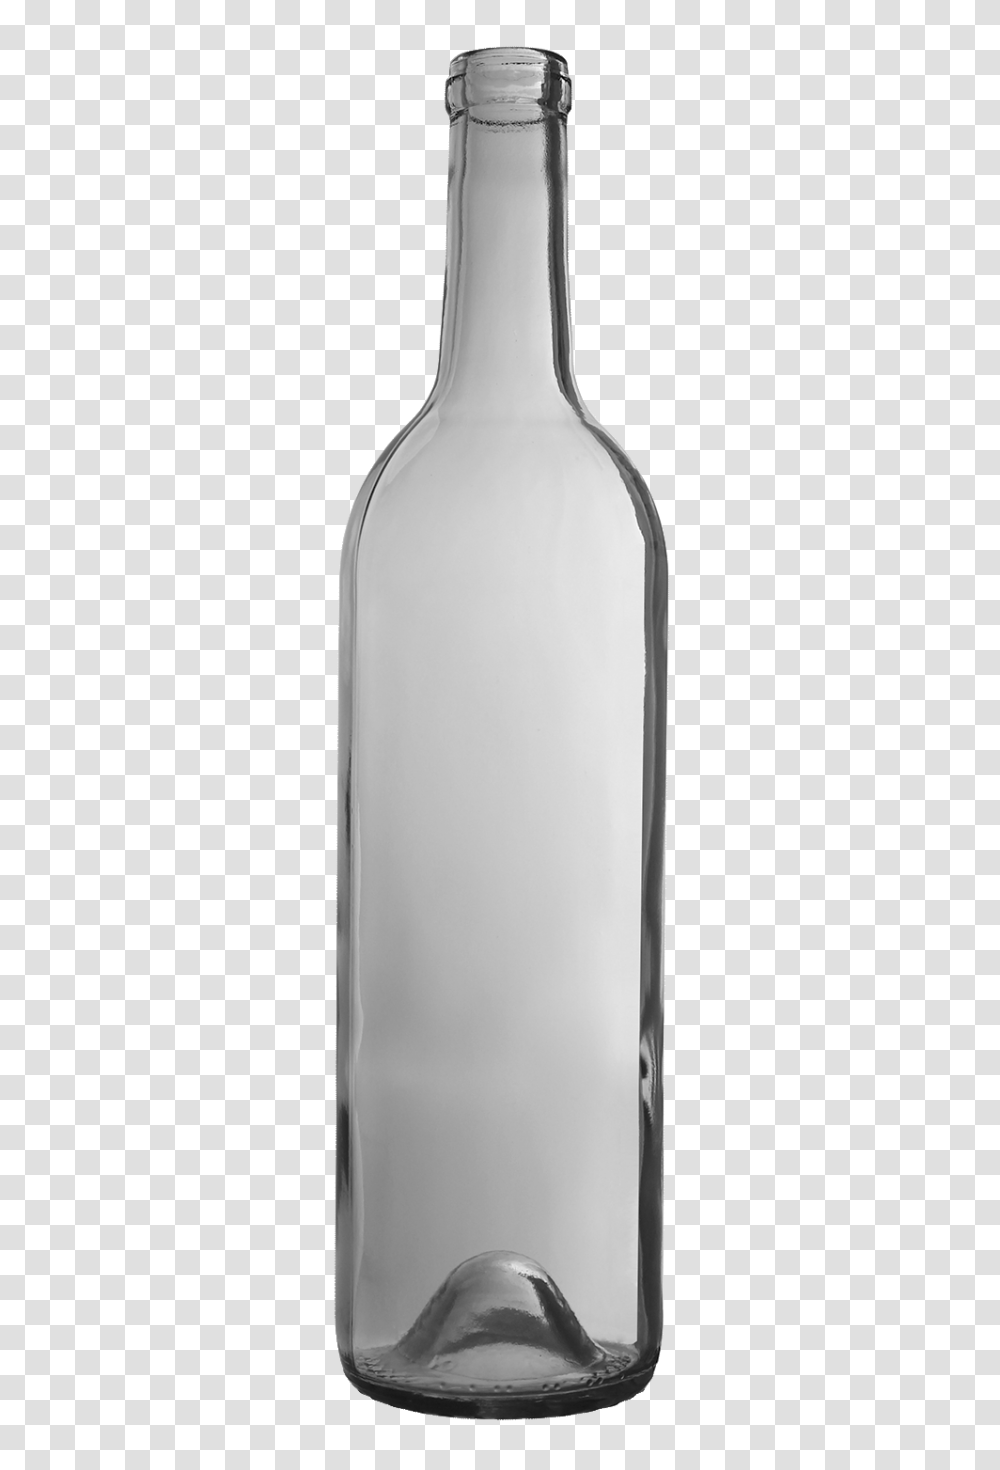 Bottles Aac Wine, Beverage, Drink, Alcohol, Wine Bottle Transparent Png